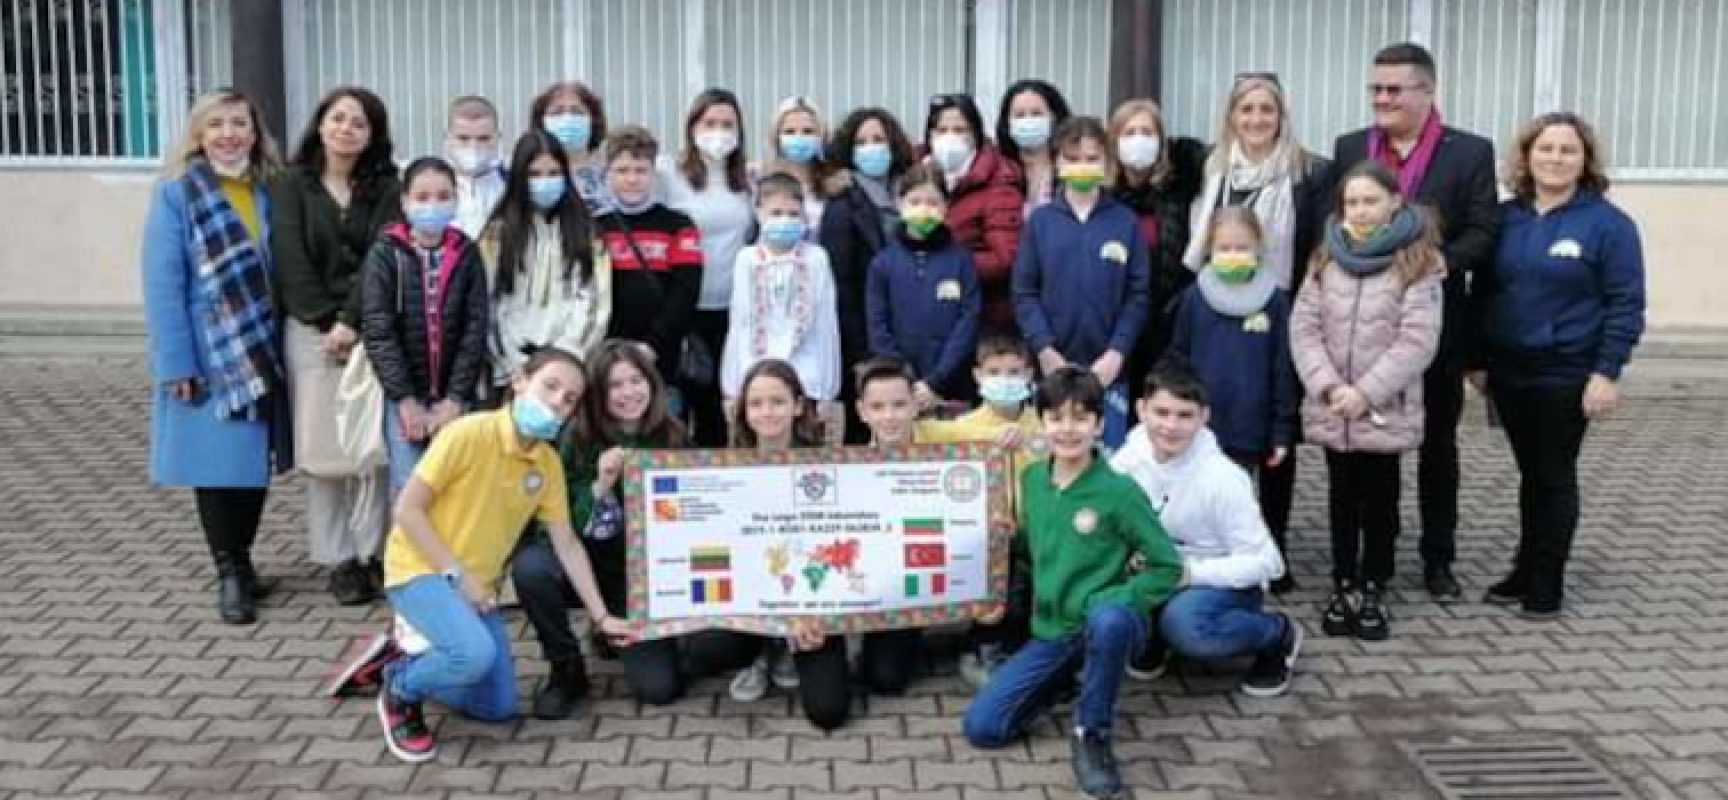 Studenti III circolo “San Giovanni Bosco” coinvolti in progetto Erasmus in Bulgaria